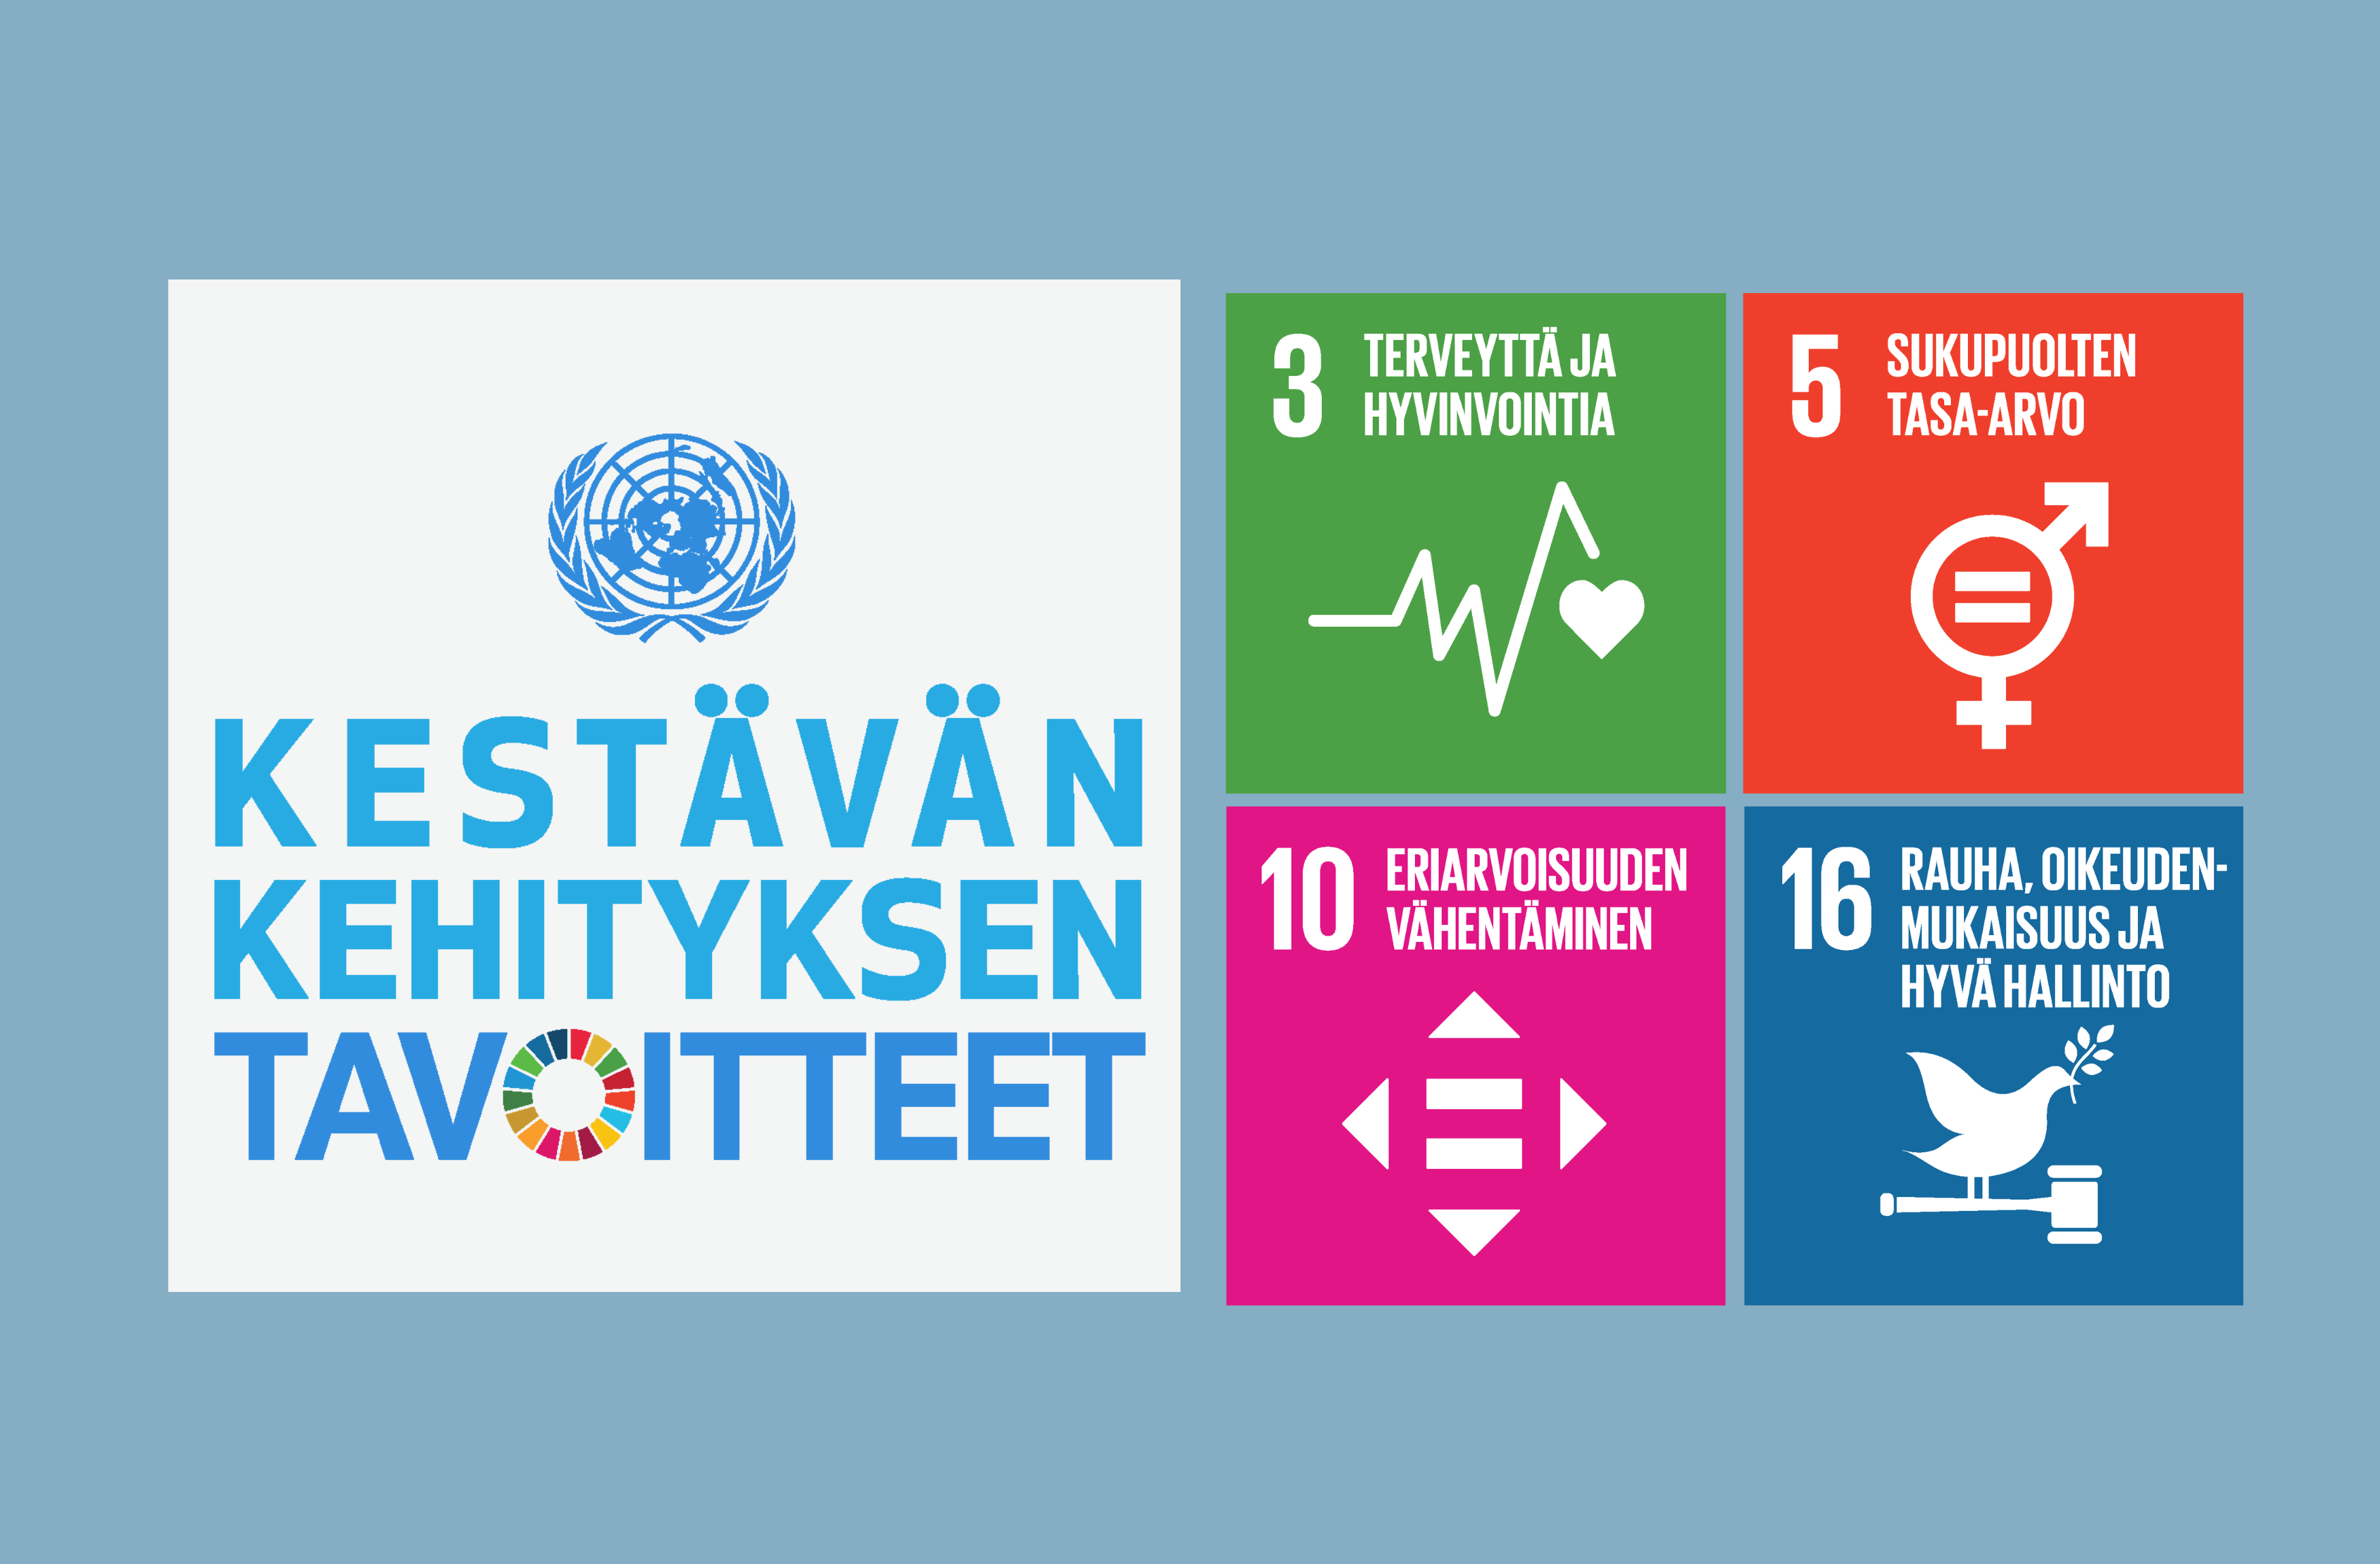 Yksi iso ikonikuva jossa teksti: Kestävän kehityksen tavoitteet. Vierellä neljä pientä ikonia, joissa tekstit 3 terveyttä ja hyvinvointia, 5 sukupuolten tasa-arvo, 10 eriarvoisuuden vähentäminen, sekä 16 rauha, oikeudenmukaisuus ja hyvä hallinto.